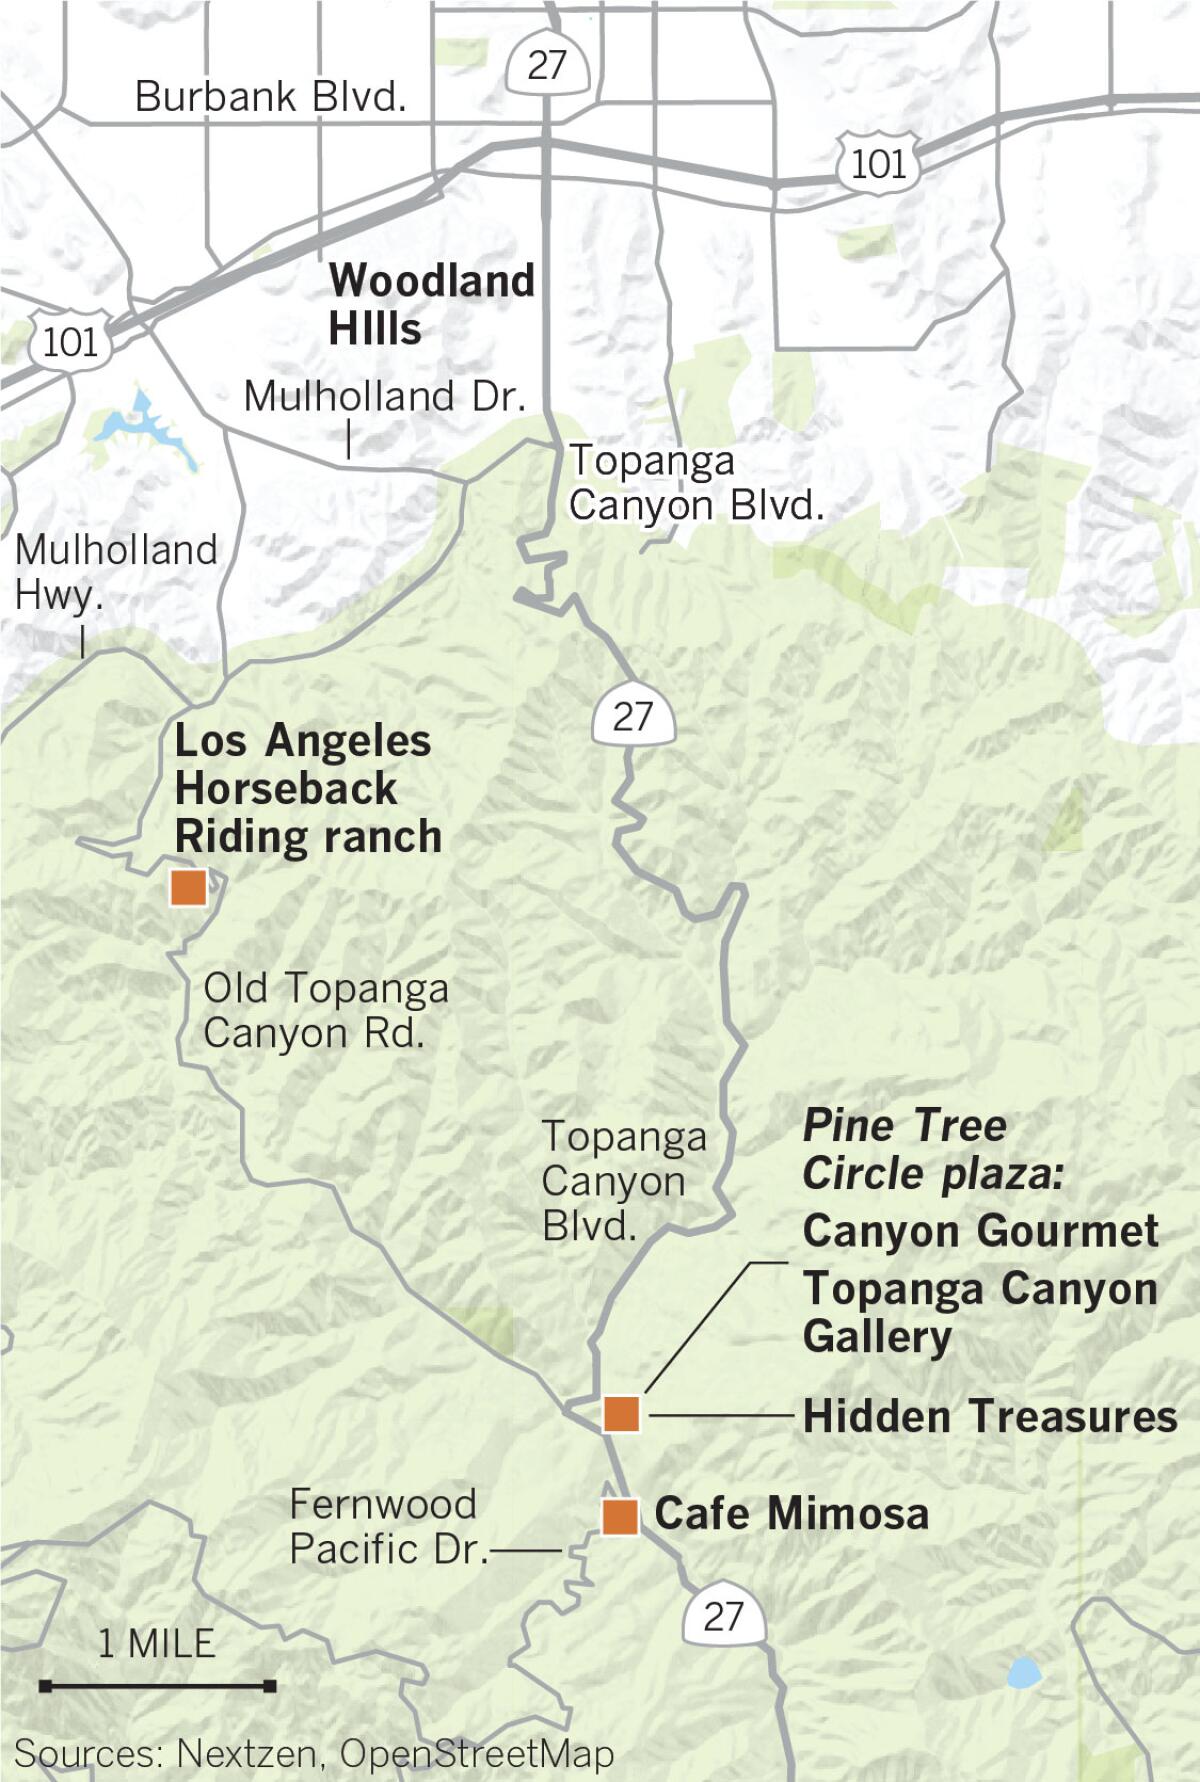 Map of Los Angeles Horseback Riding ranch, Pine Tree Circle Plaza, Hidden Treasures, Cafe Mimosa, Woodland Hills, Topanga Canyon Rd.